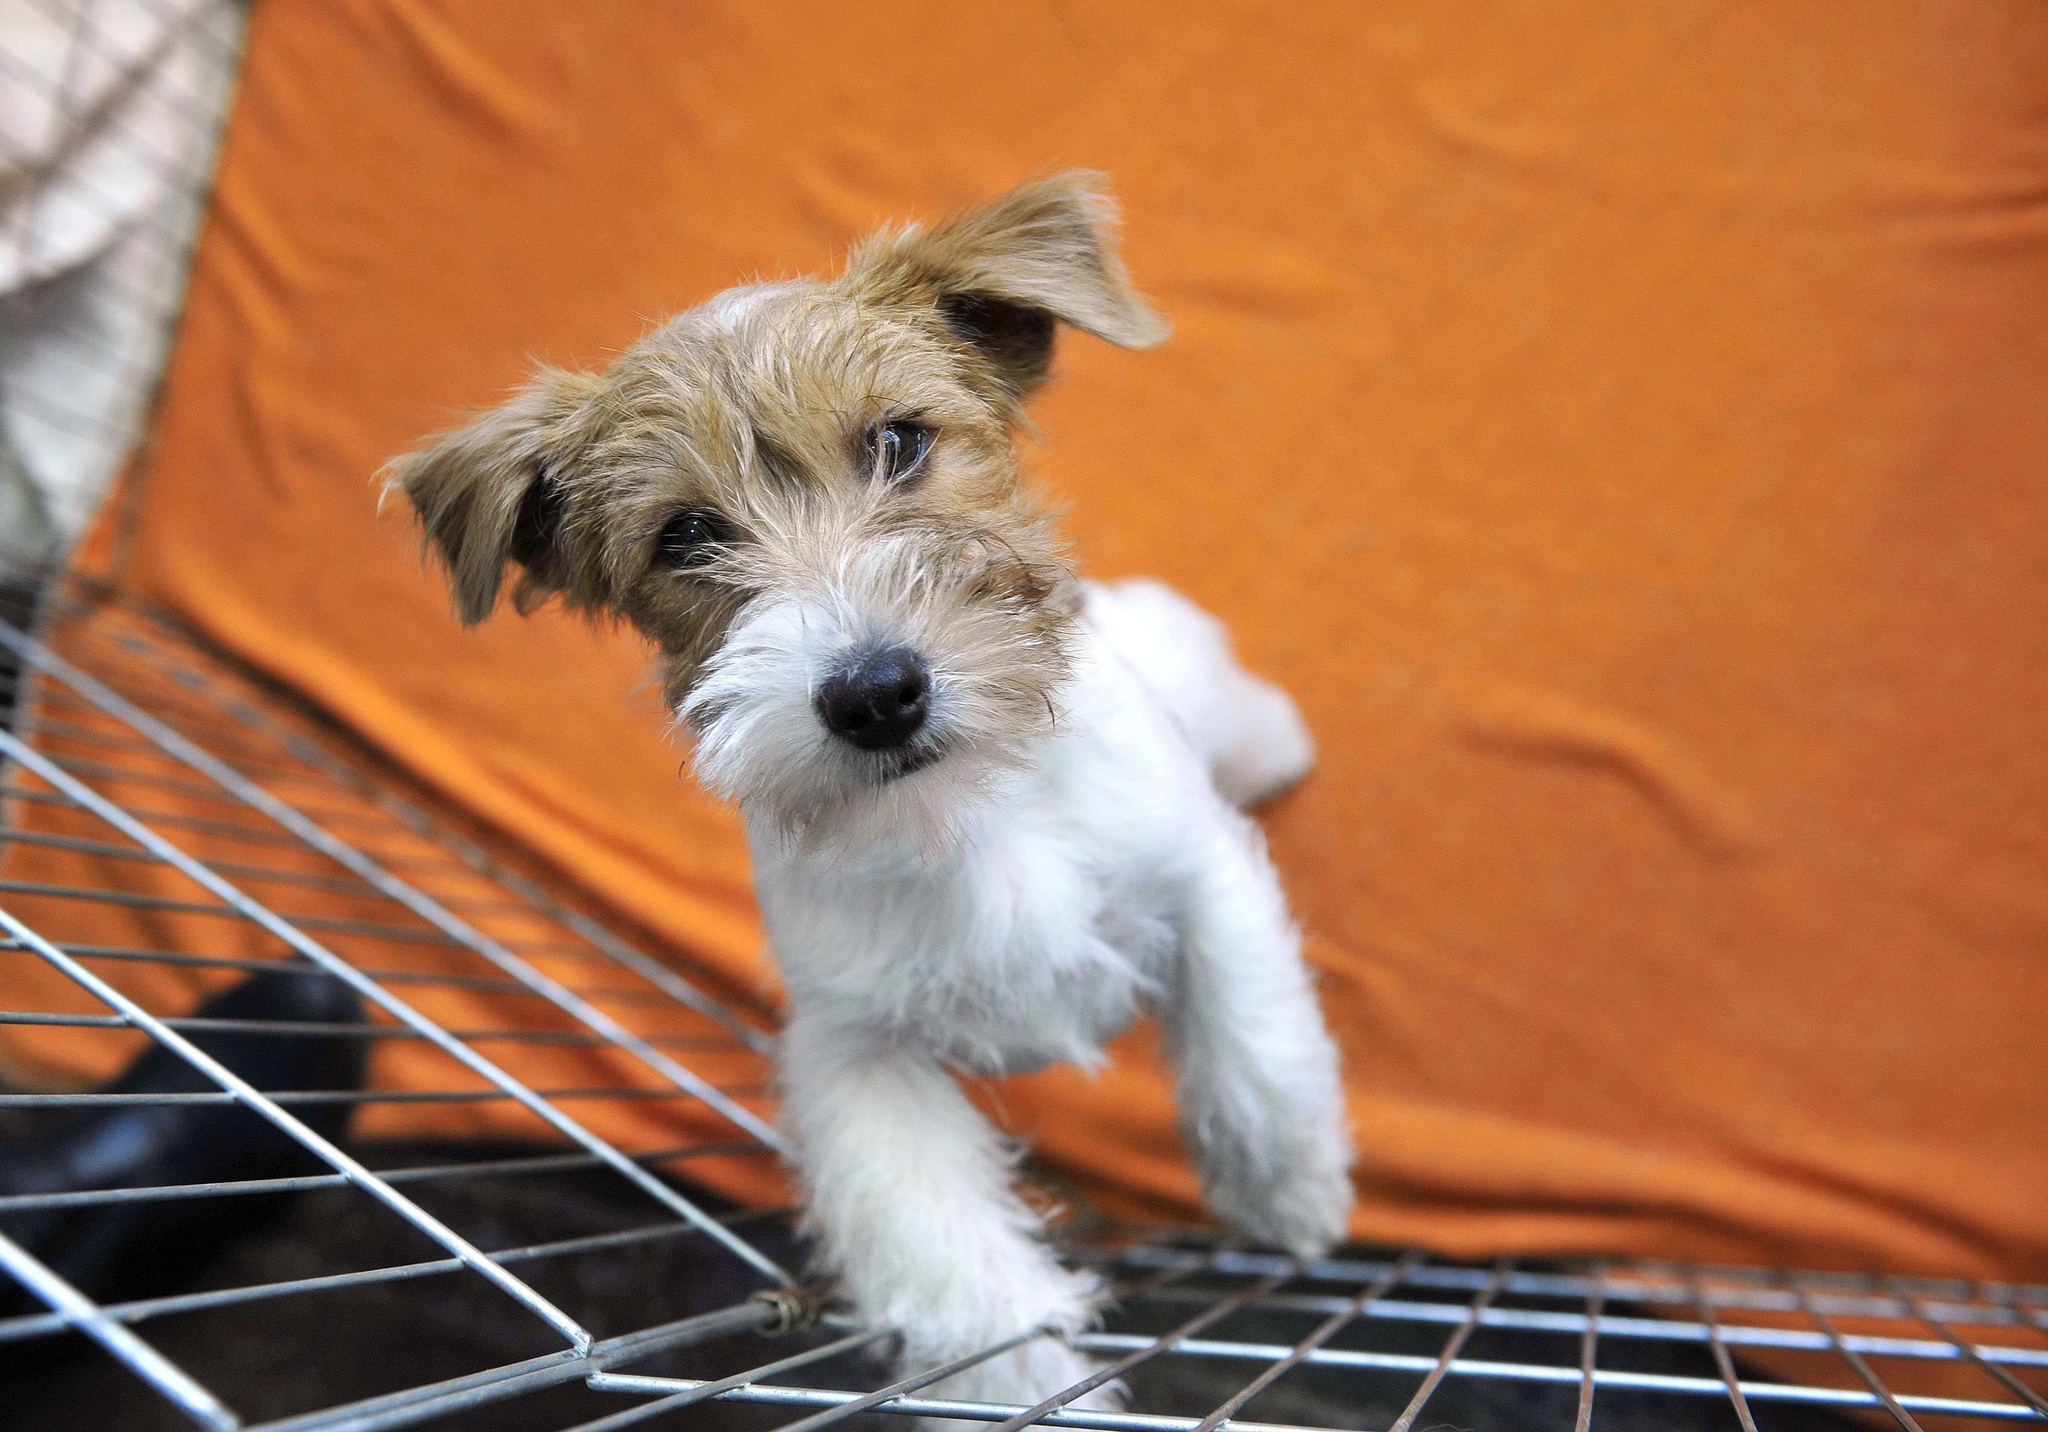 Desmantelamiento de una red de cría y venta de cachorros en España |  animal de compañía